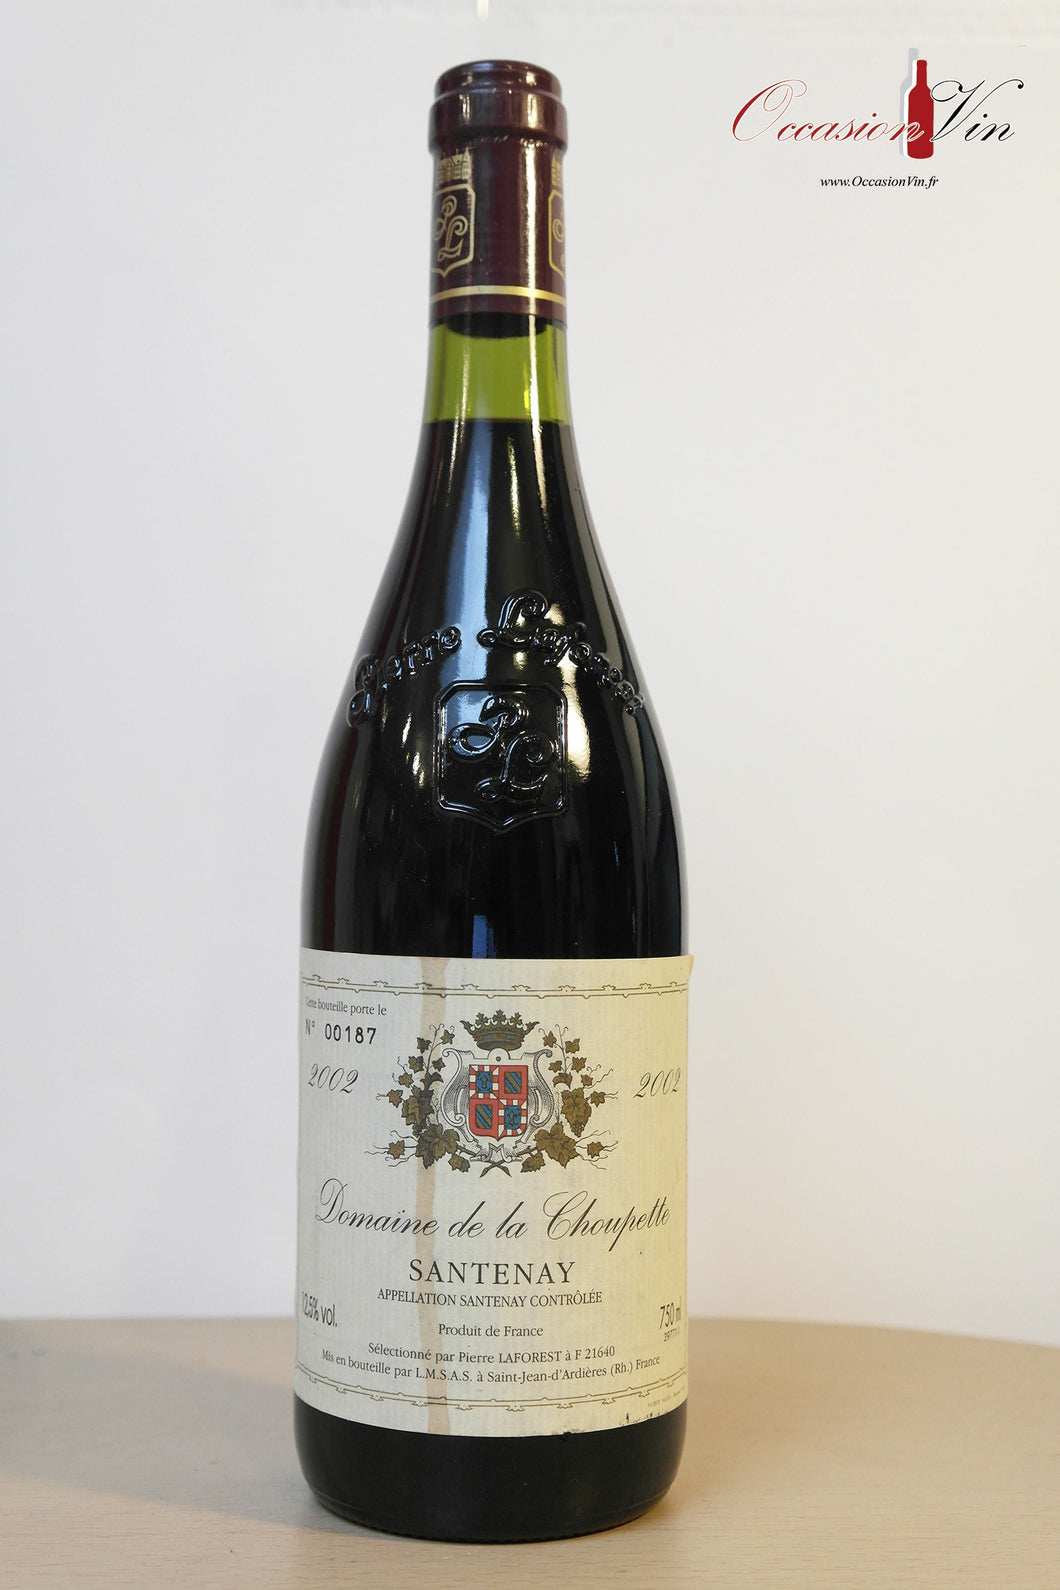 Domaine de la Choupette Santenay Vin 2002